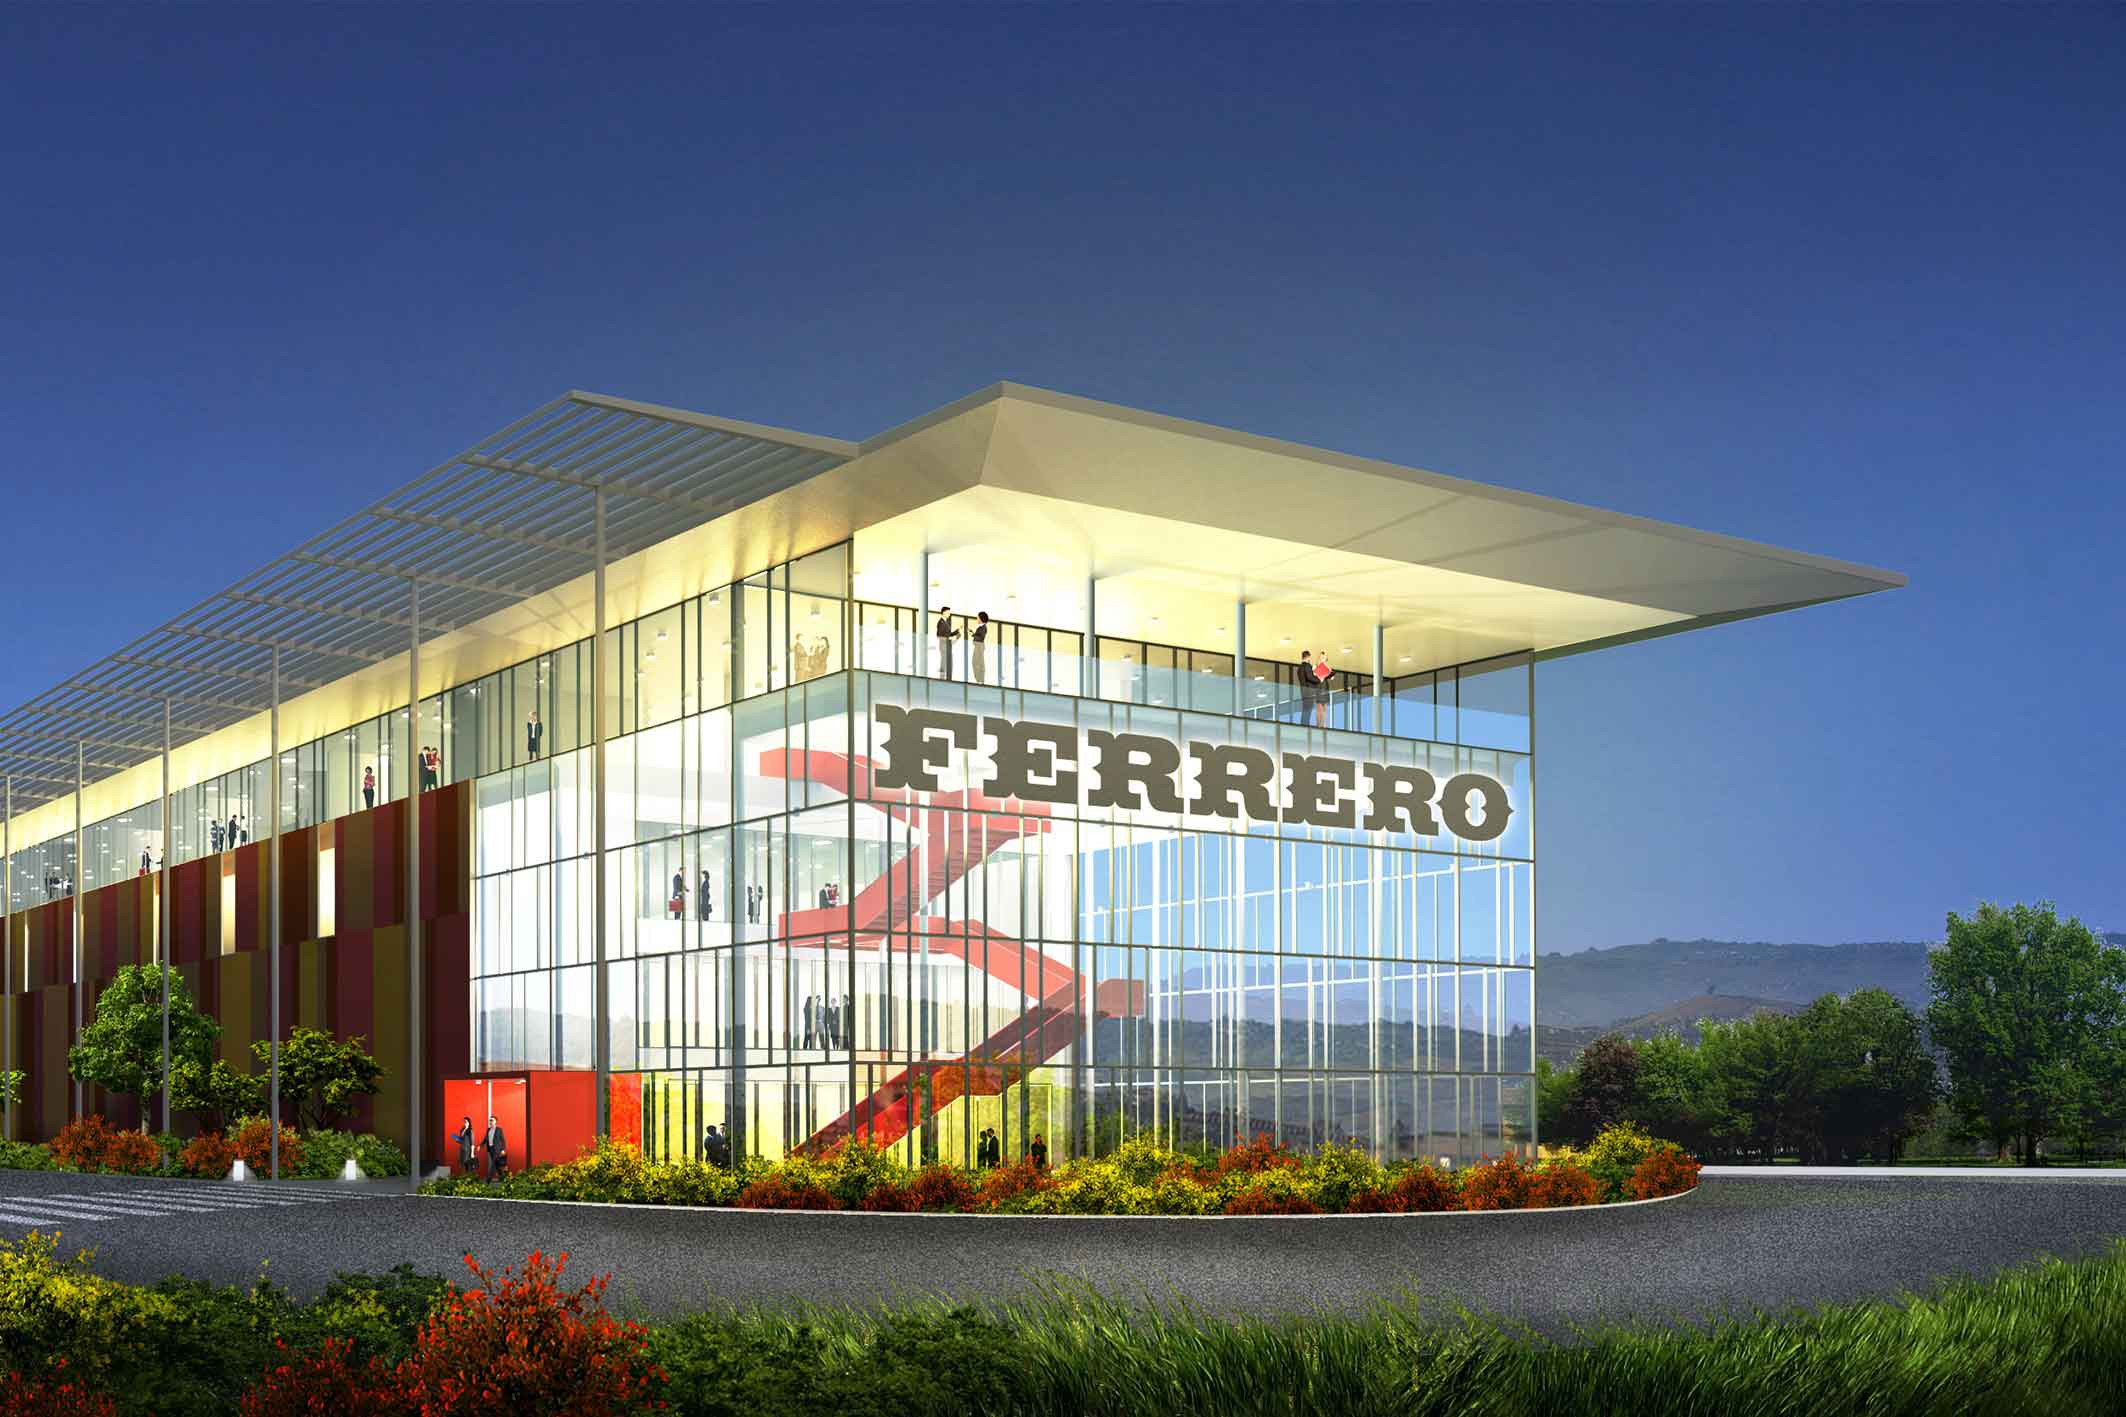 Ferrero avvia la review media internazionale da 700 milioni di euro di cui 160 in Italia gestiti da Zenith,  in gara con Mindshare e dentsu